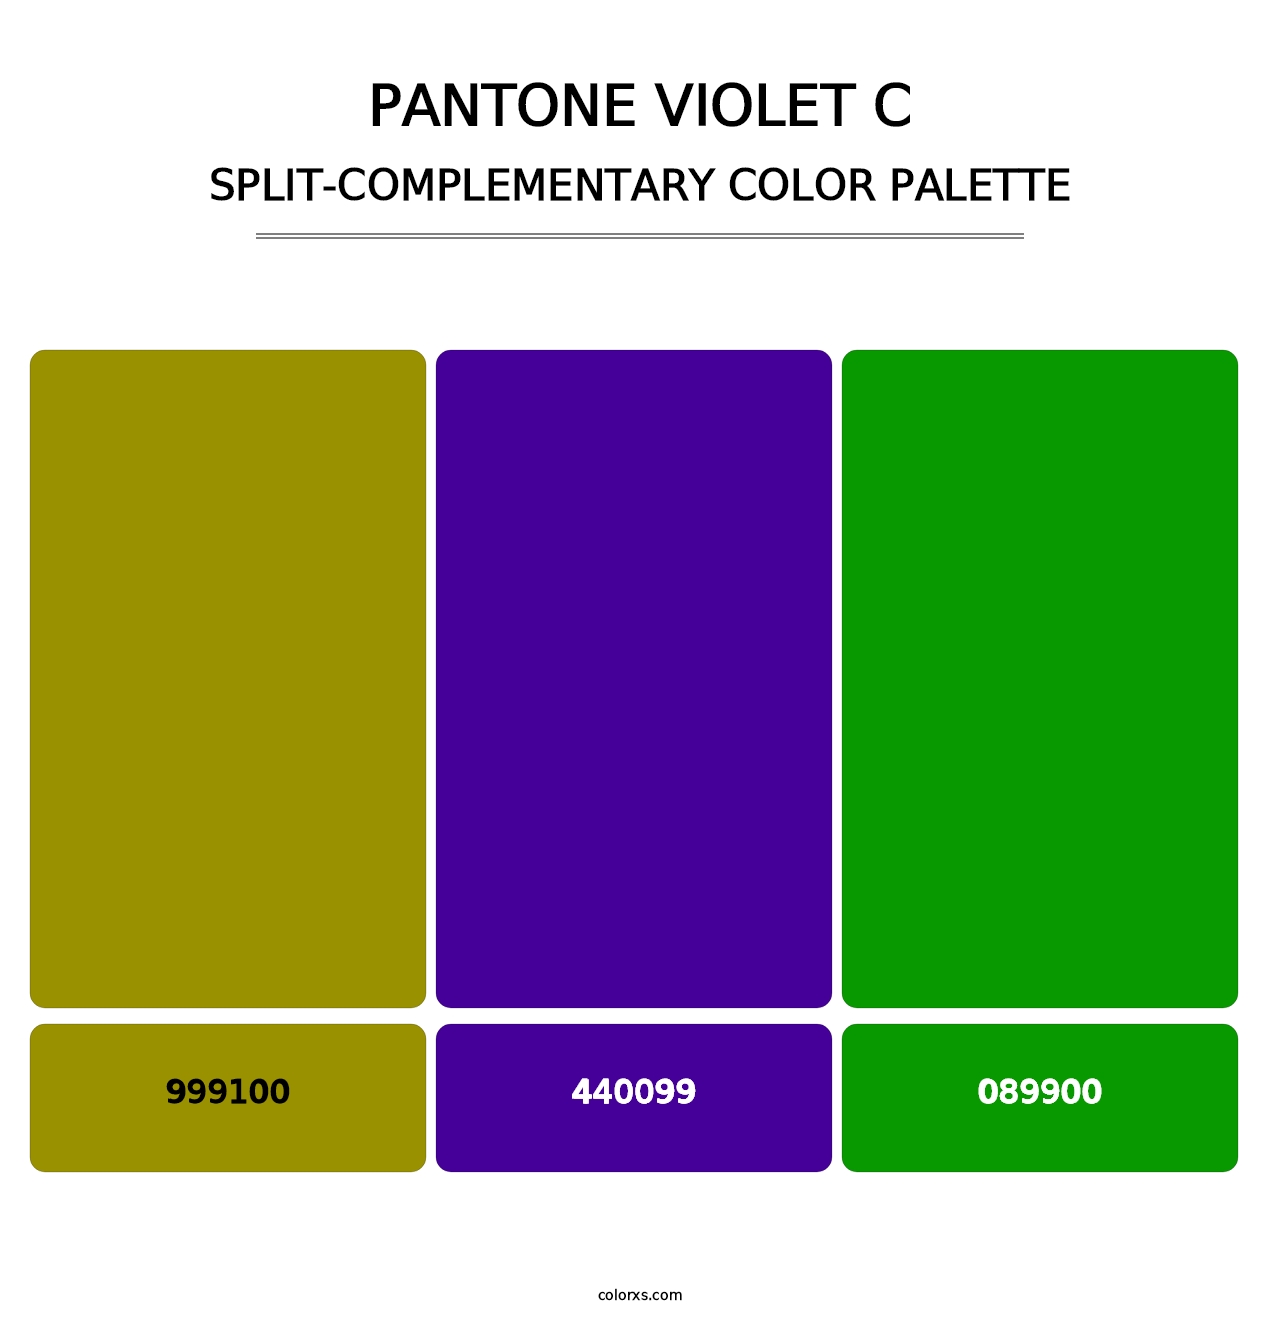 PANTONE Violet C - Split-Complementary Color Palette